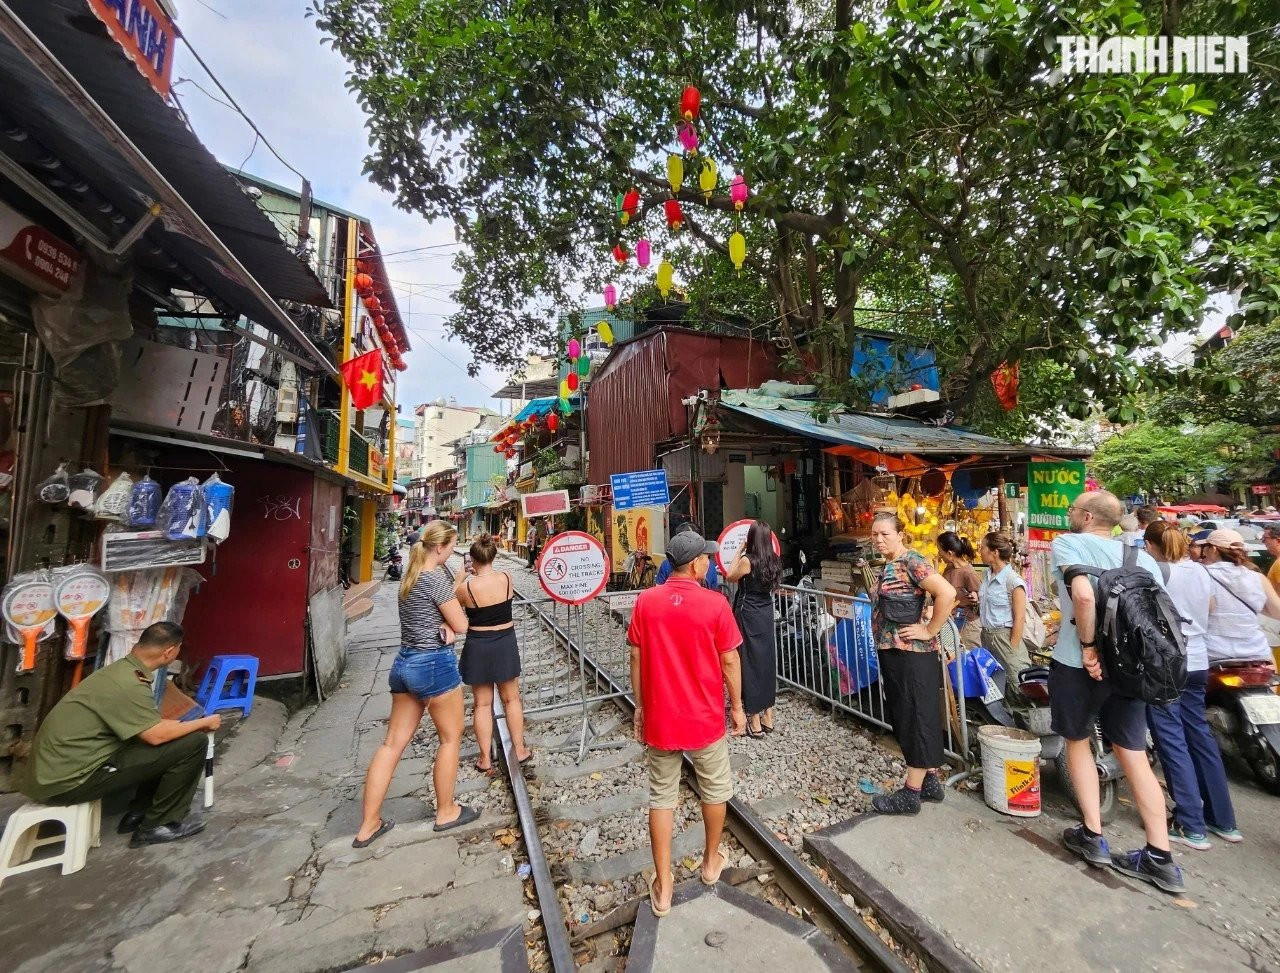 Nhiều du khách tìm đến phố cà phê đường tàu phía quận Hoàn Kiếm, đoạn từ Trần Phú đến Phùng Hưng, bị bảo vệ ngăn lại. Bên trong, có công an đứng gác. Ảnh: Thanh Niên